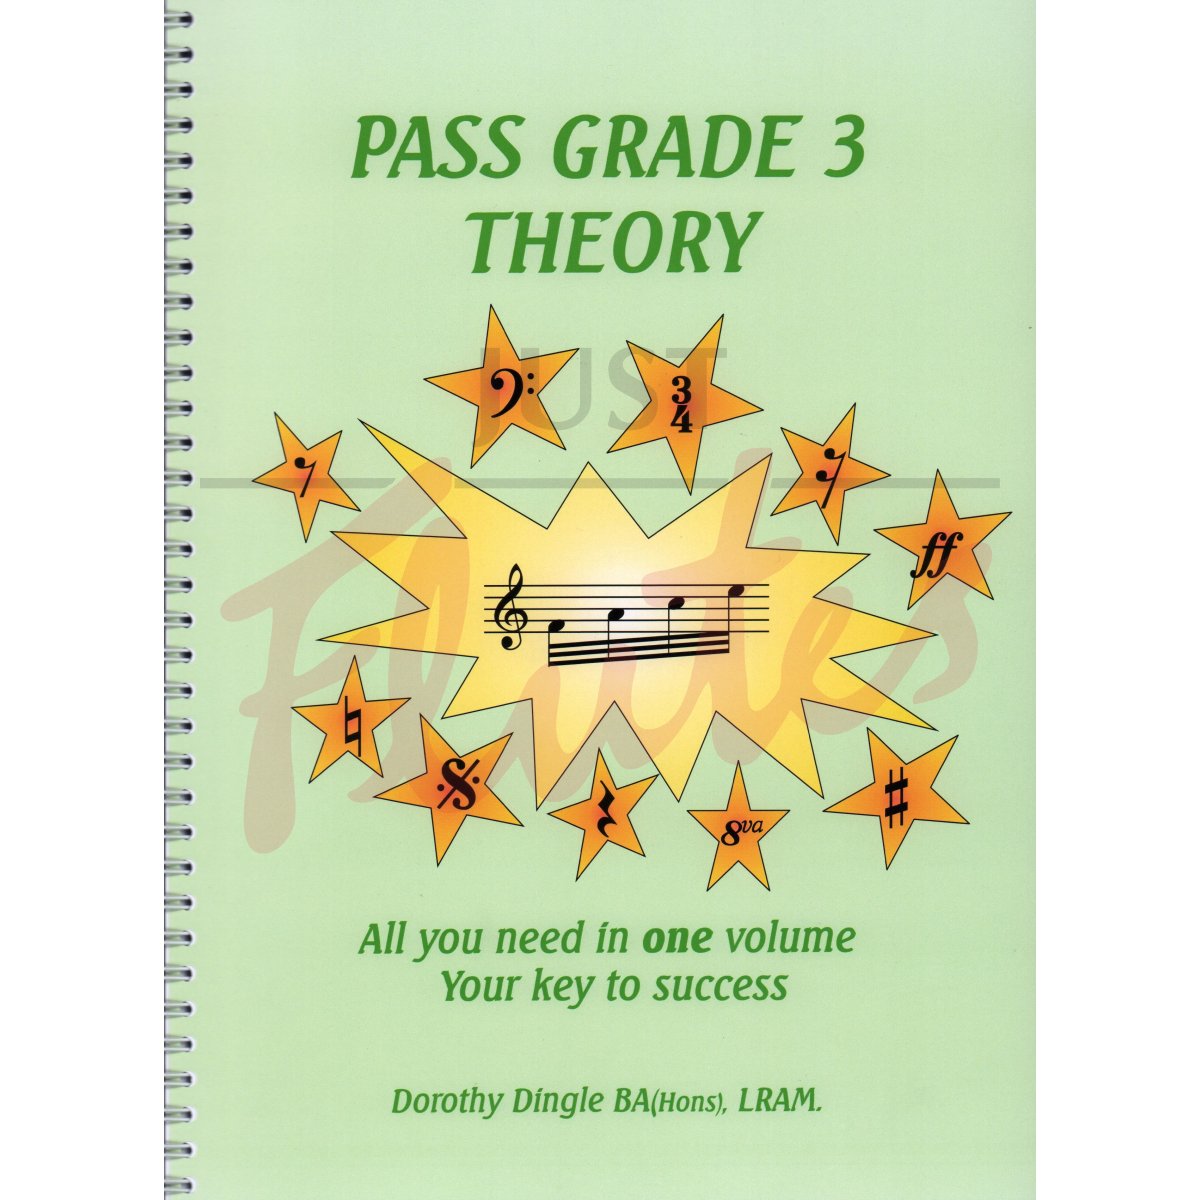 Pass Grade 3 Theory